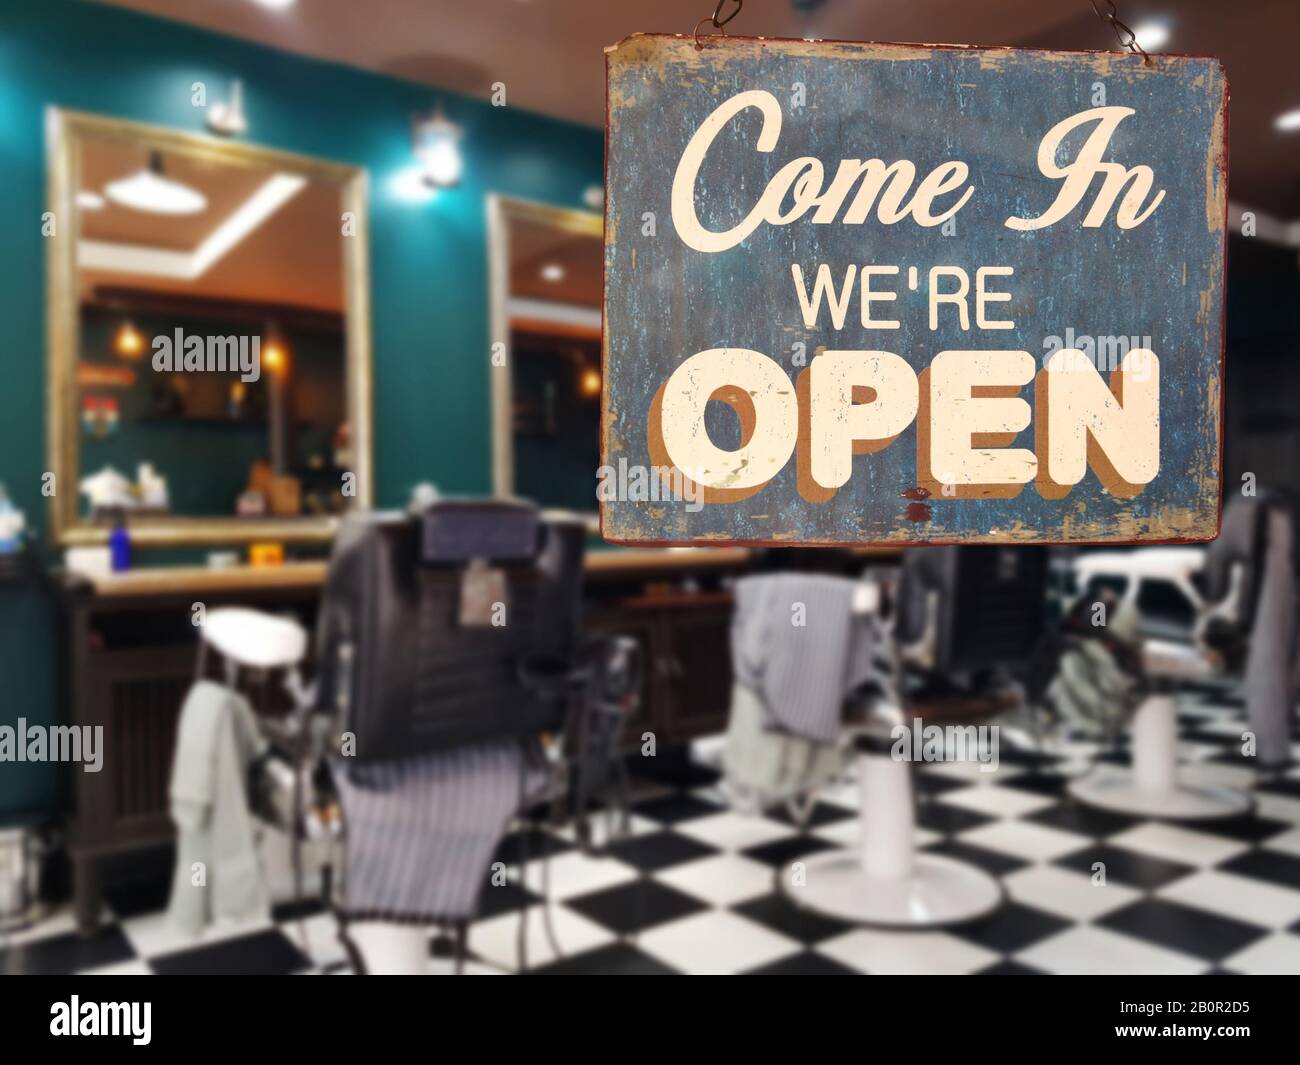 Ein Geschäft vintage Zeichen, das sagt "Come in We're Open" auf Friseur und Friseursalon Schaufenster. Bild von abstrakten Blur Friseur und Friseursalon Shop Stockfoto